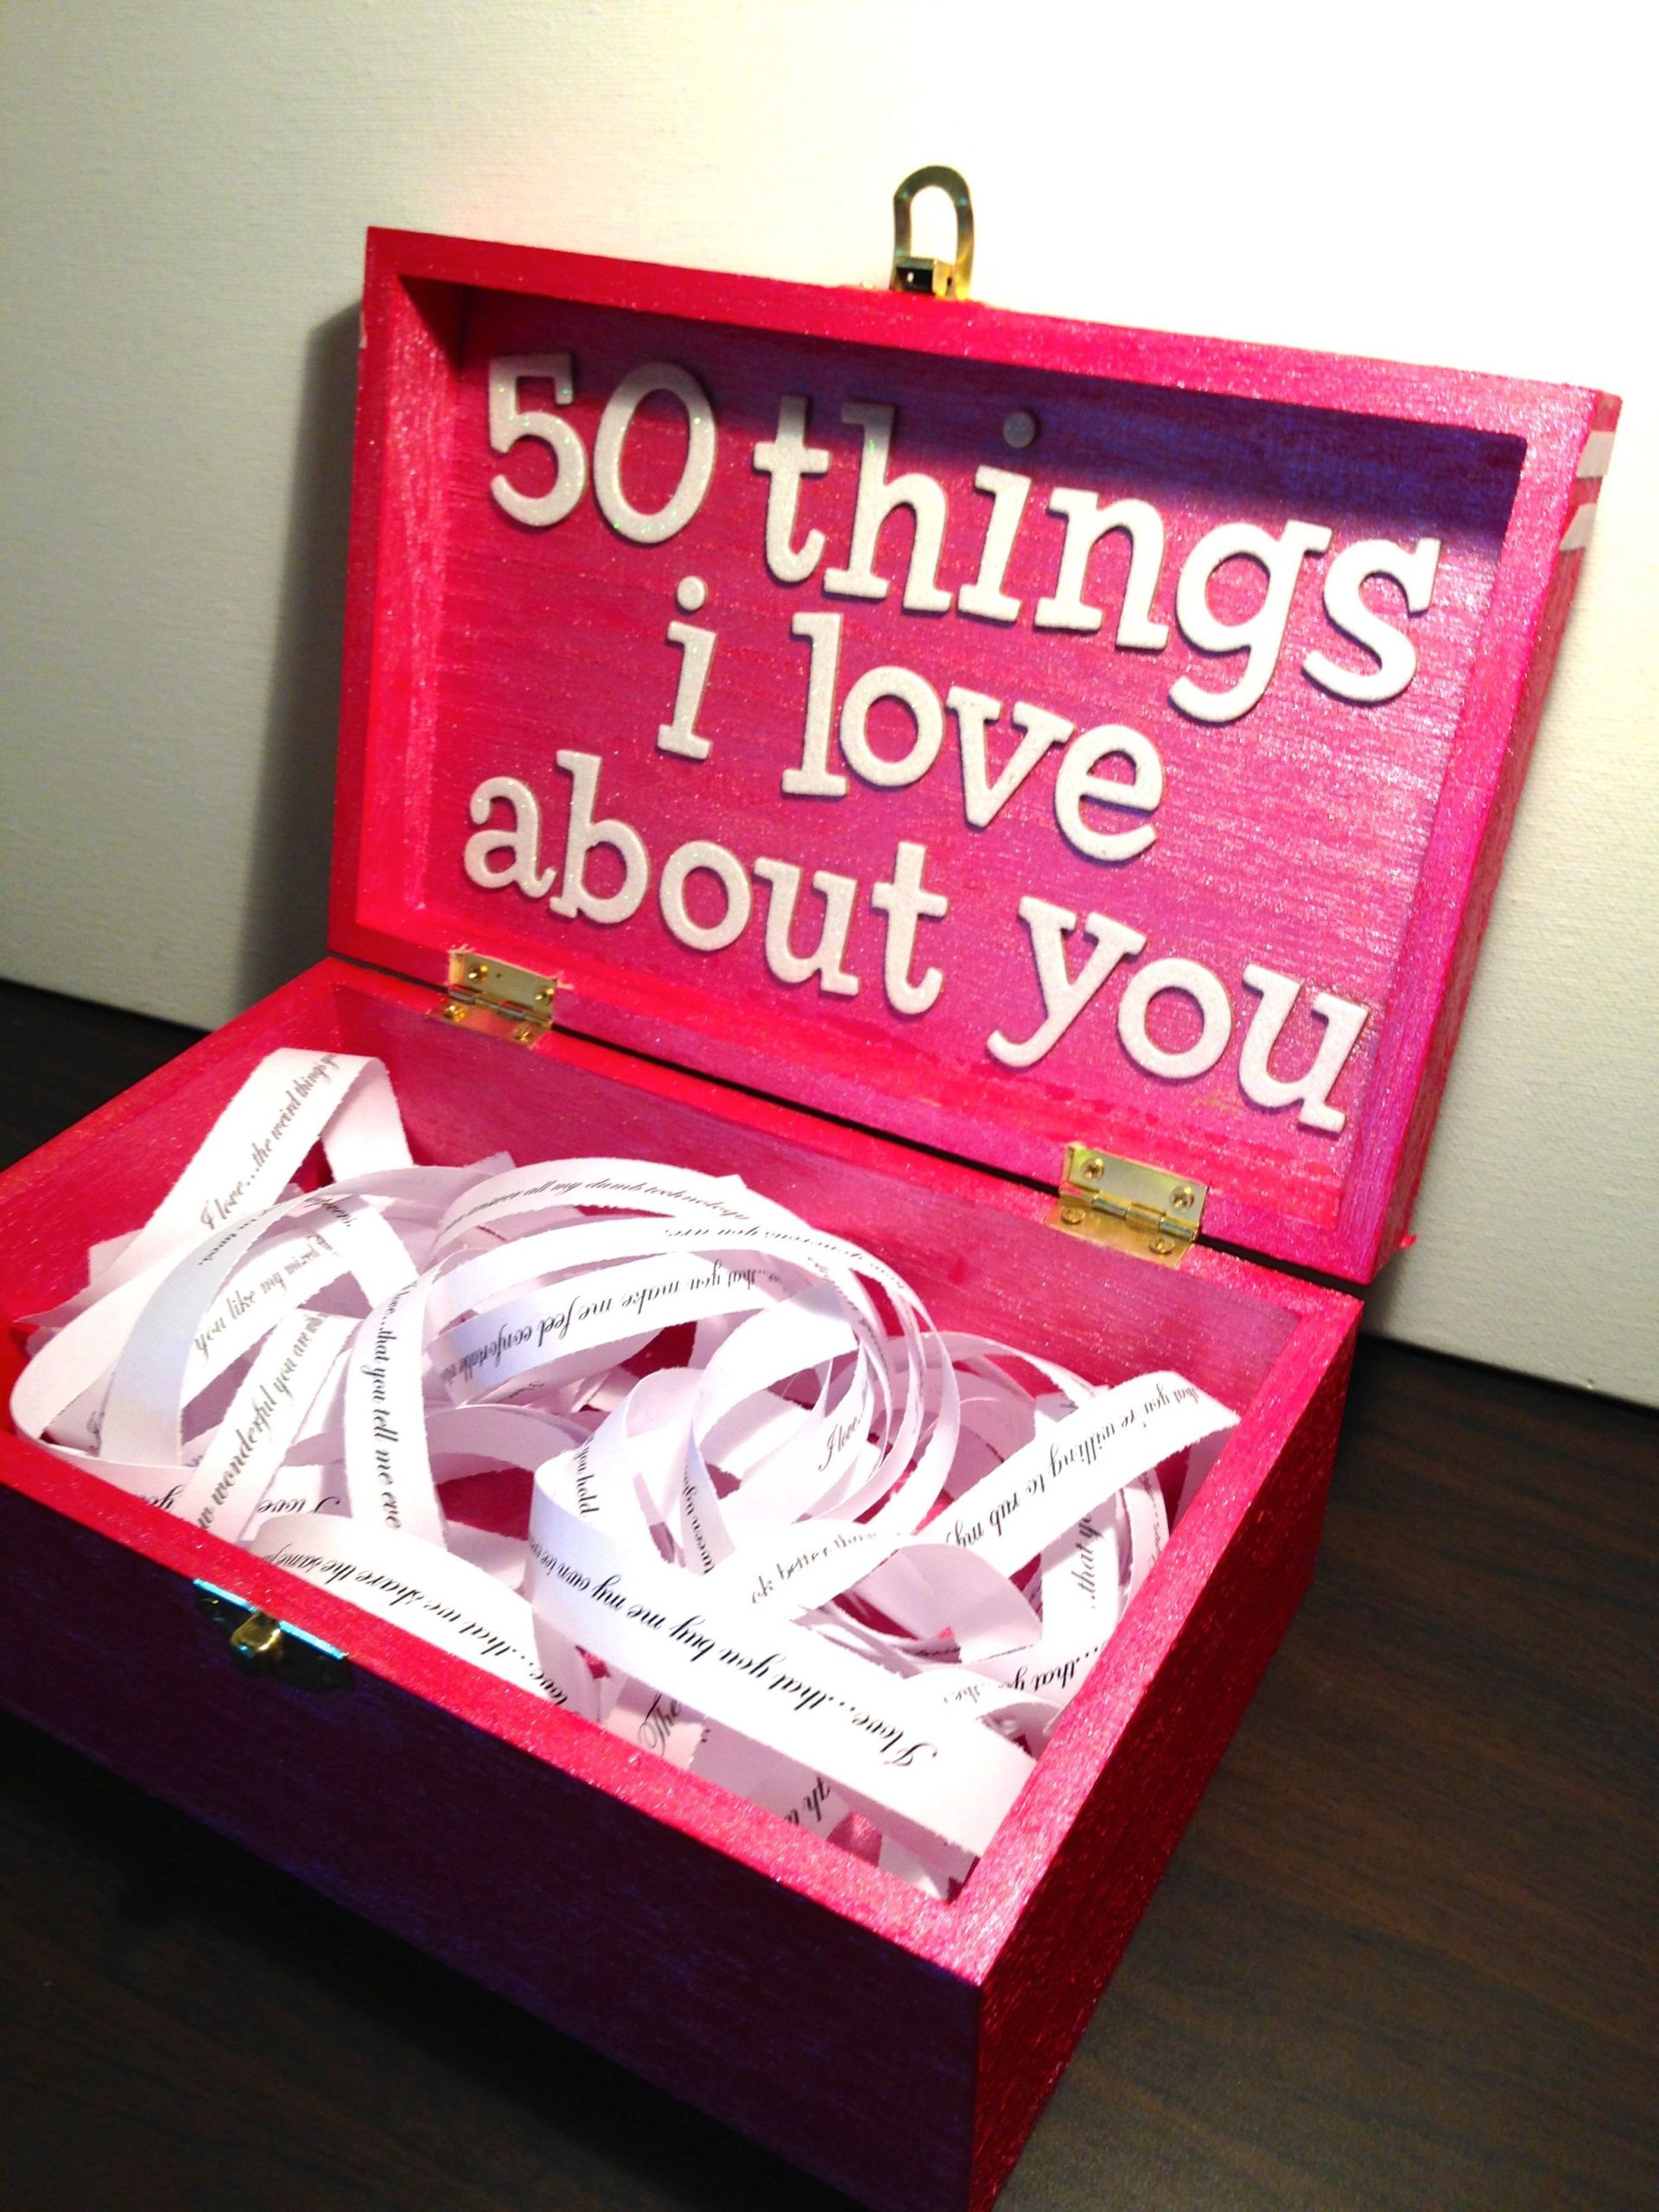 Cute Gift Ideas For Your Girlfriend
 Boyfriend Girlfriend t ideas for birthday valentine